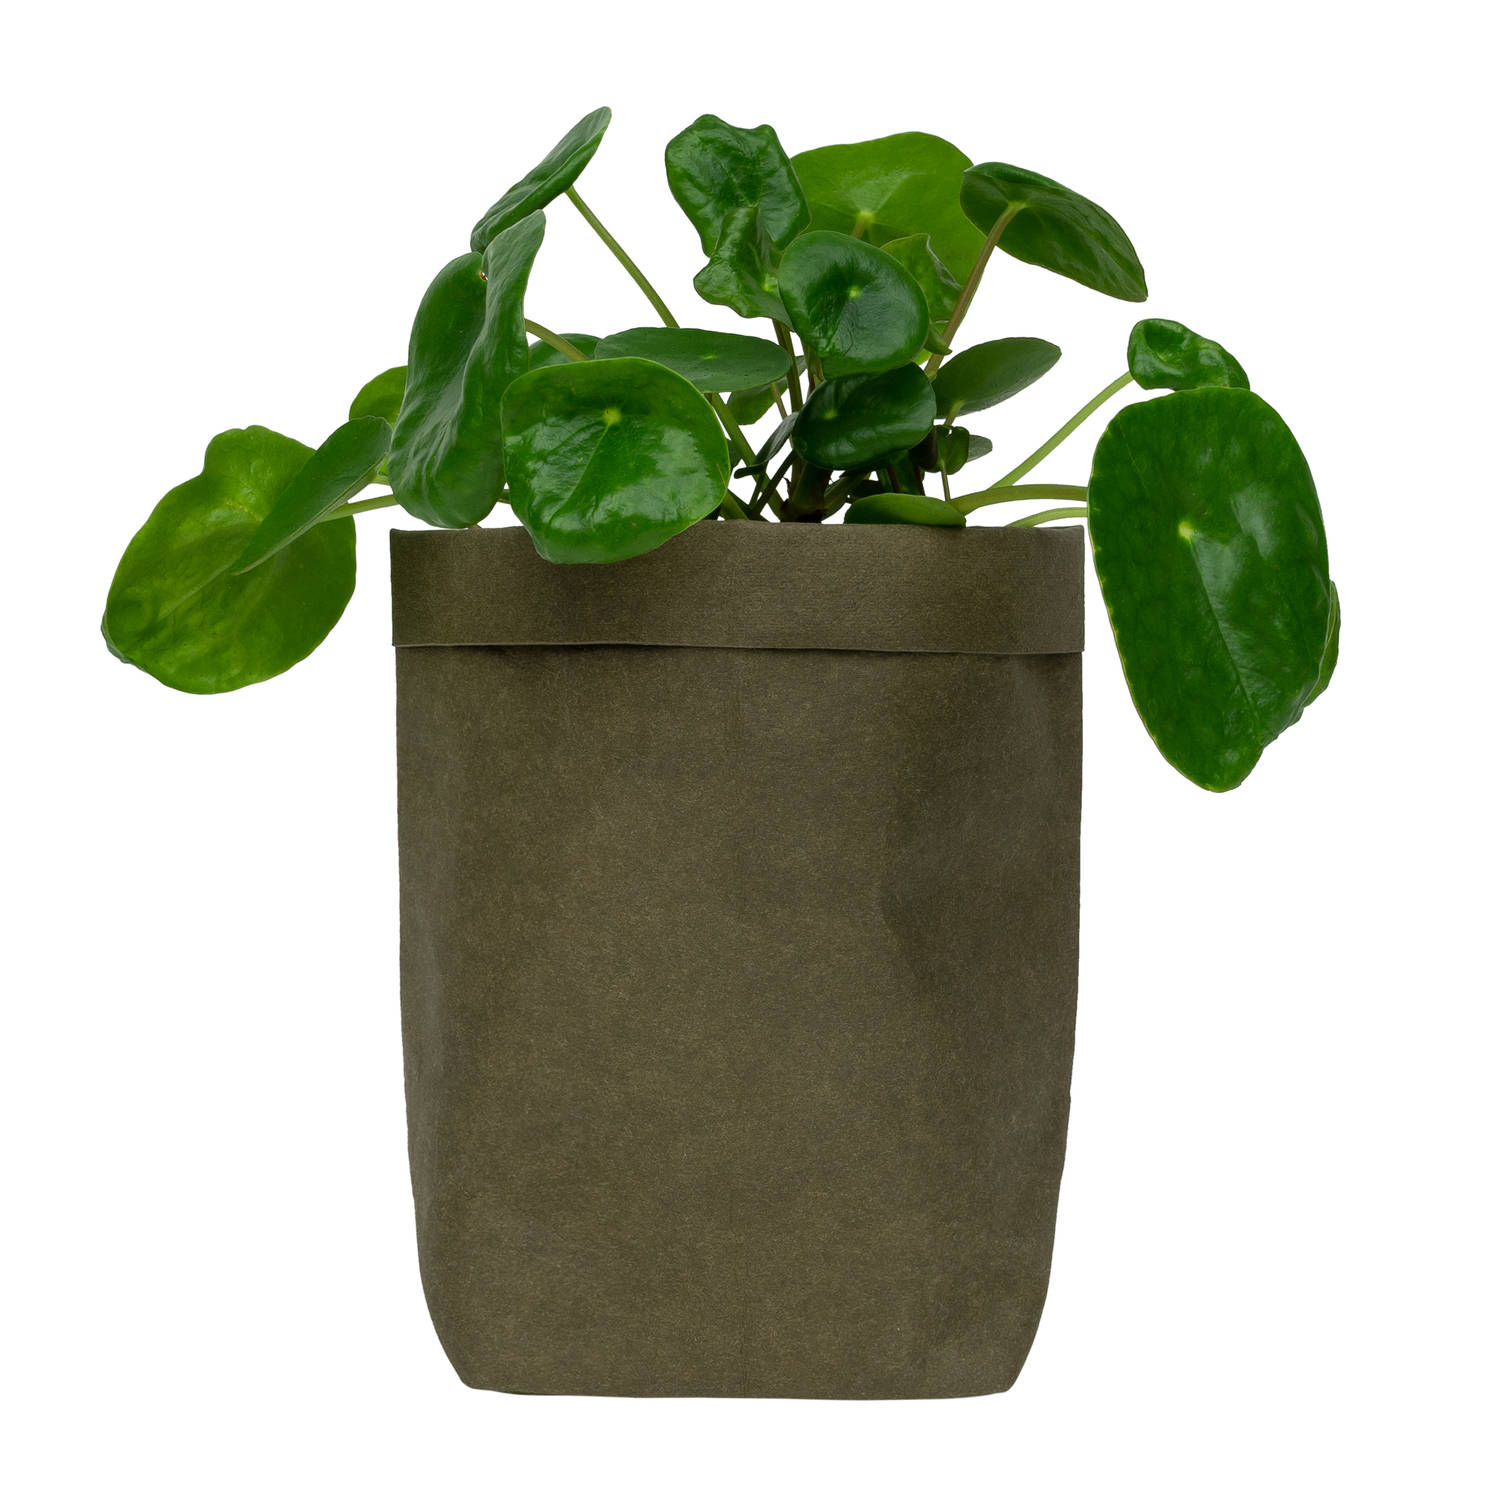 QUVIO Plantenzak uitwasbaar 10x10x20cm - Donker groen